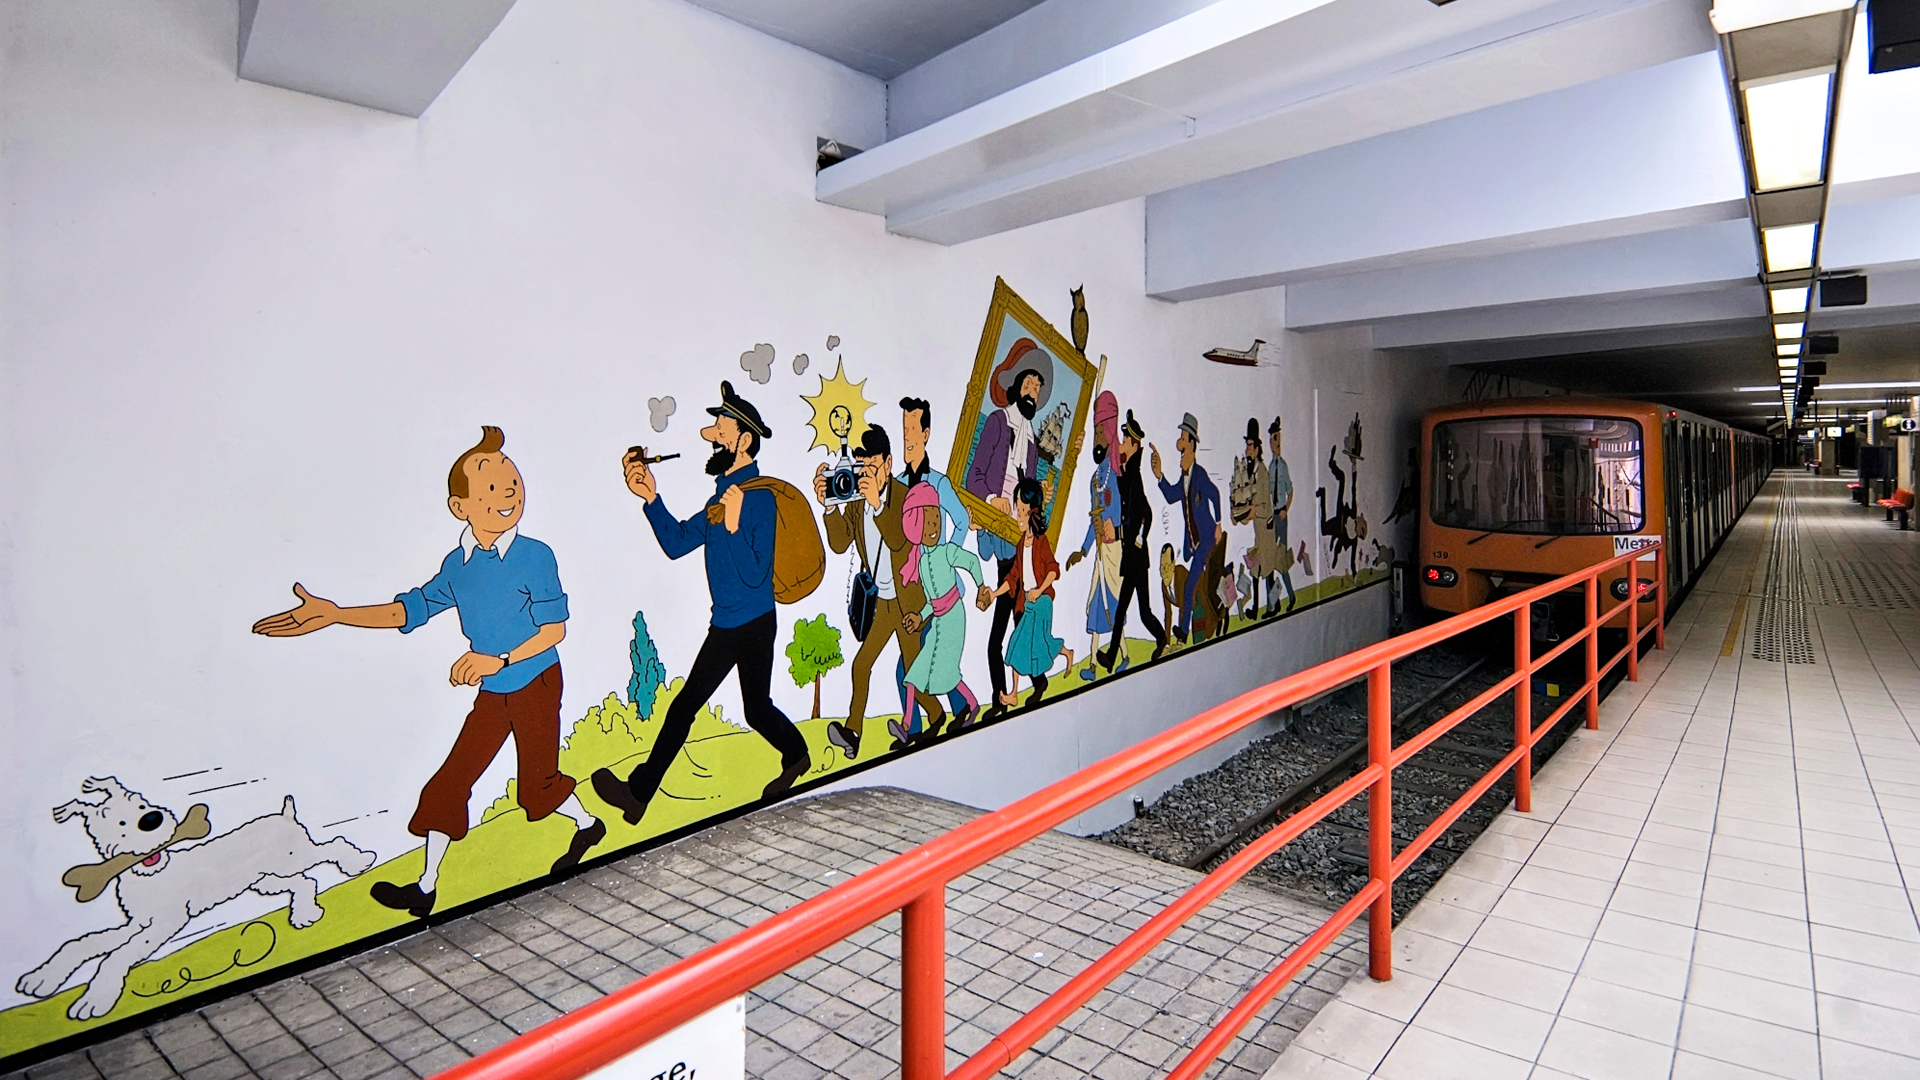 Sarjakuvataiteilija Hergén luoma Tintti metroasemalla